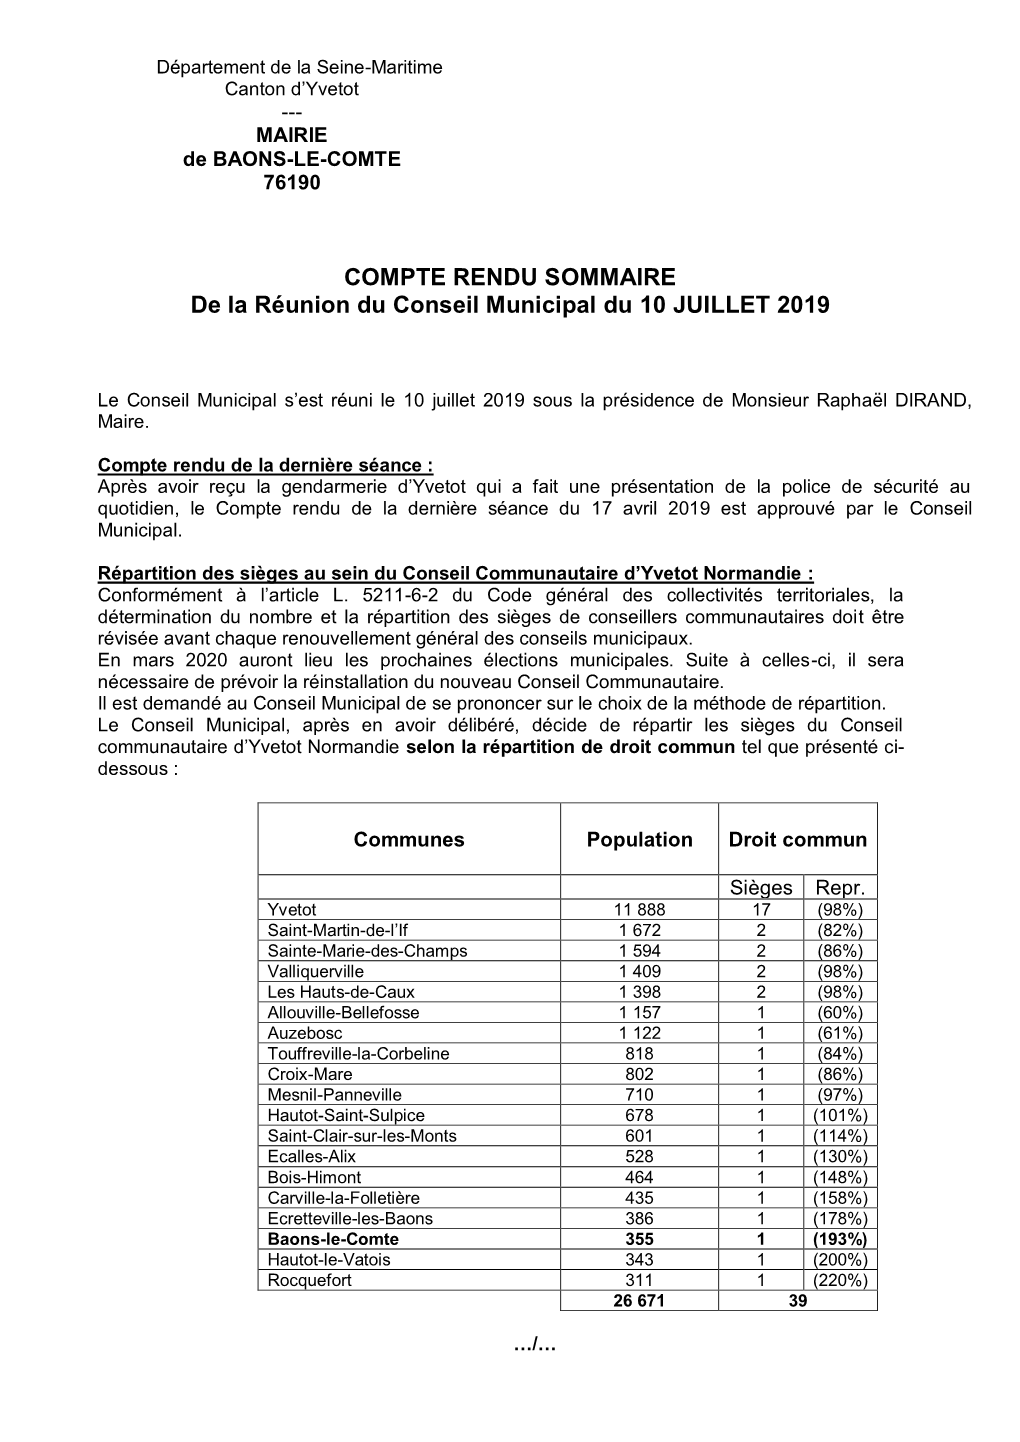 COMPTE RENDU SOMMAIRE De La Réunion Du Conseil Municipal Du 10 JUILLET 2019